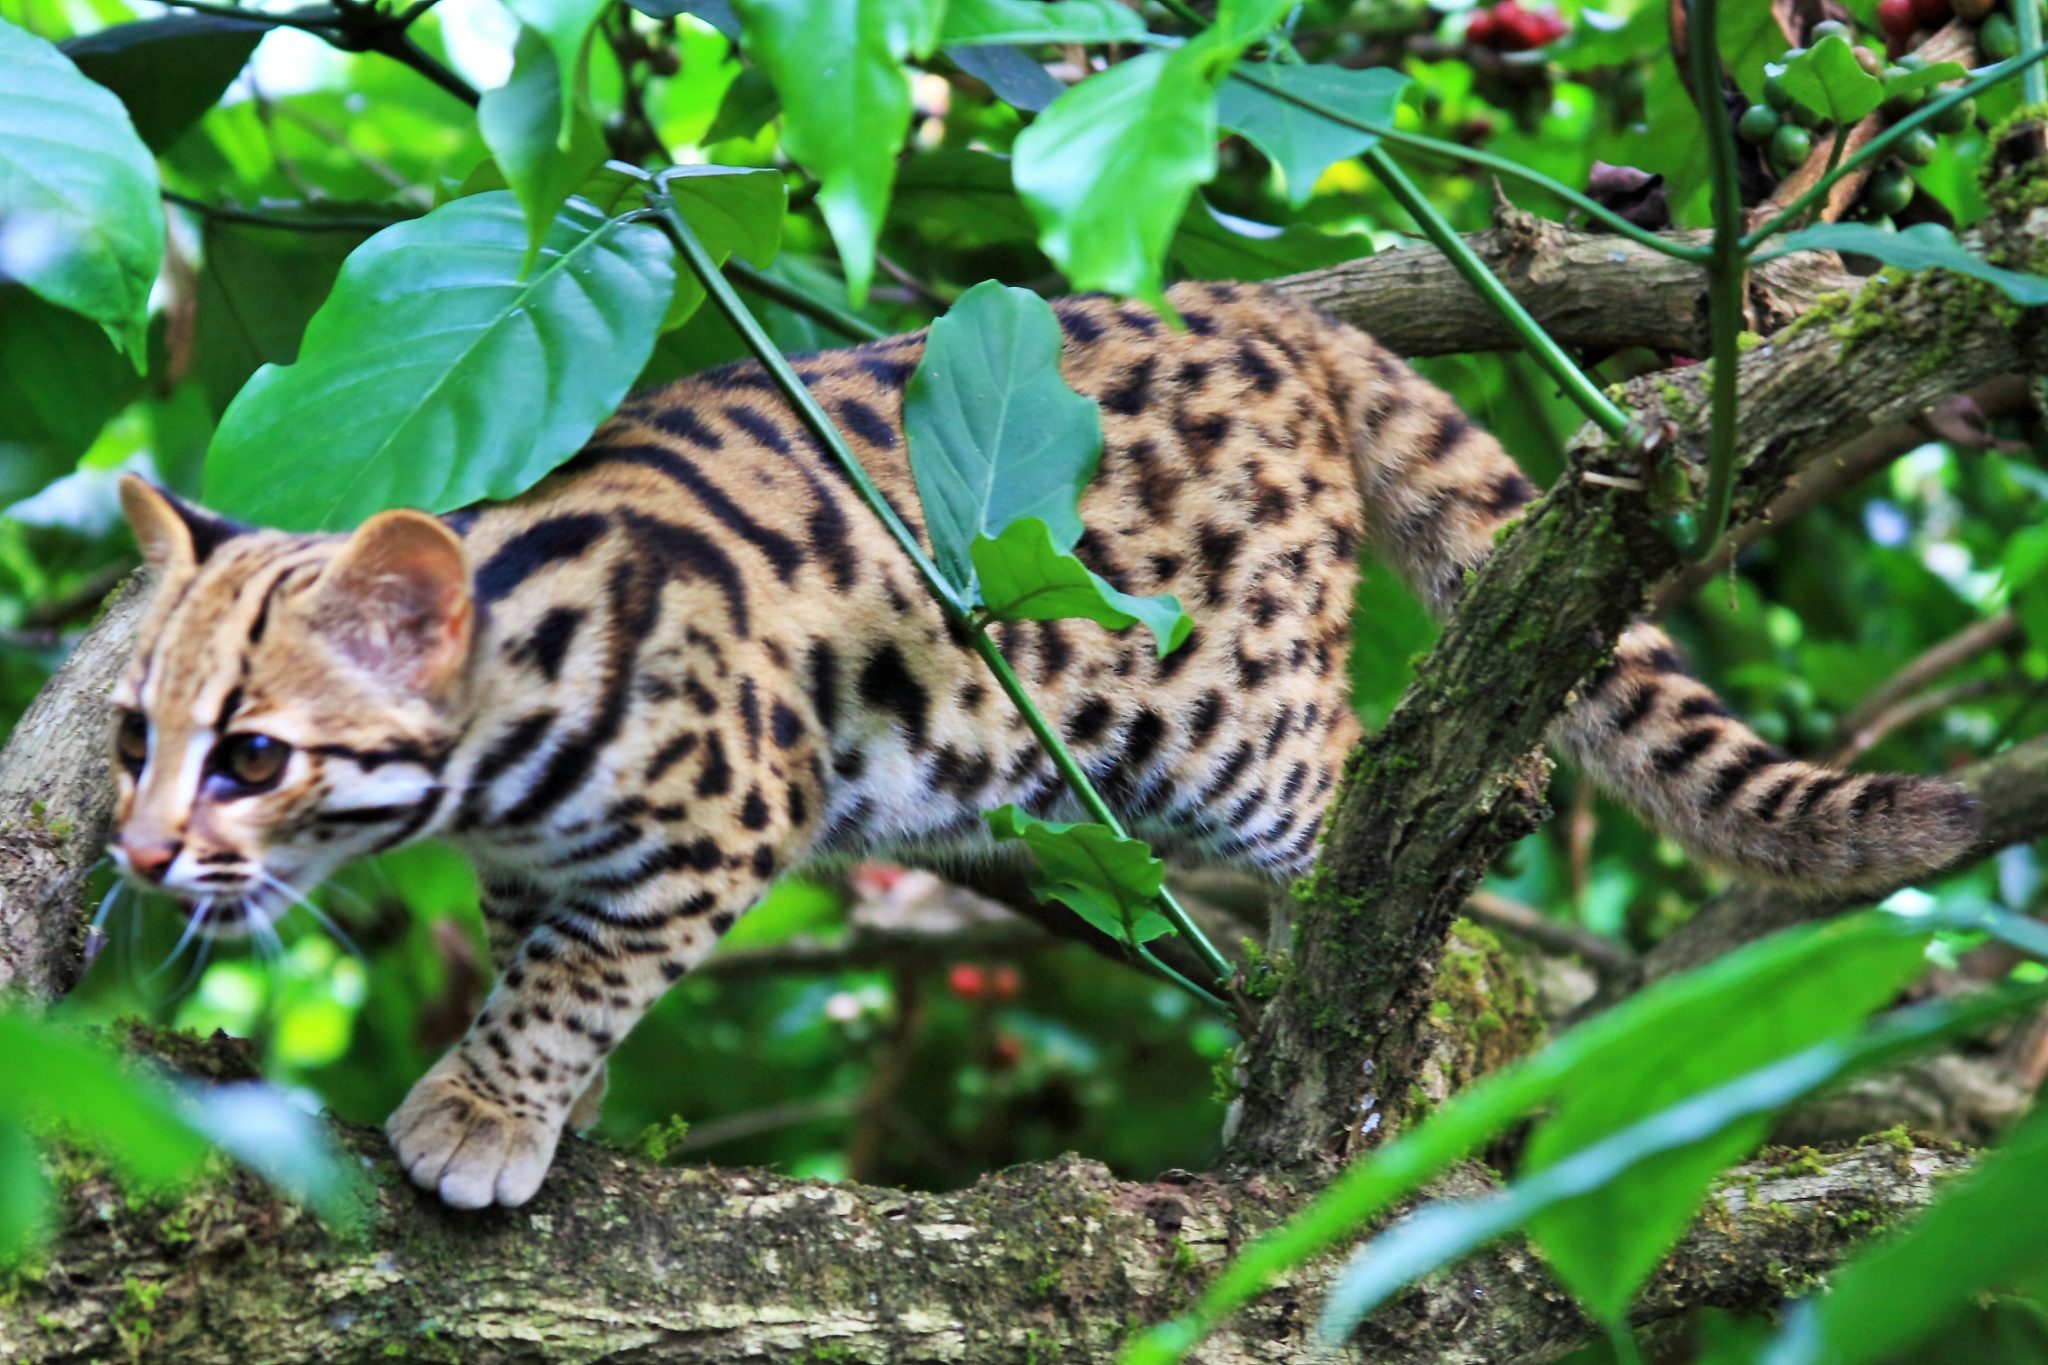 A Leopard cat